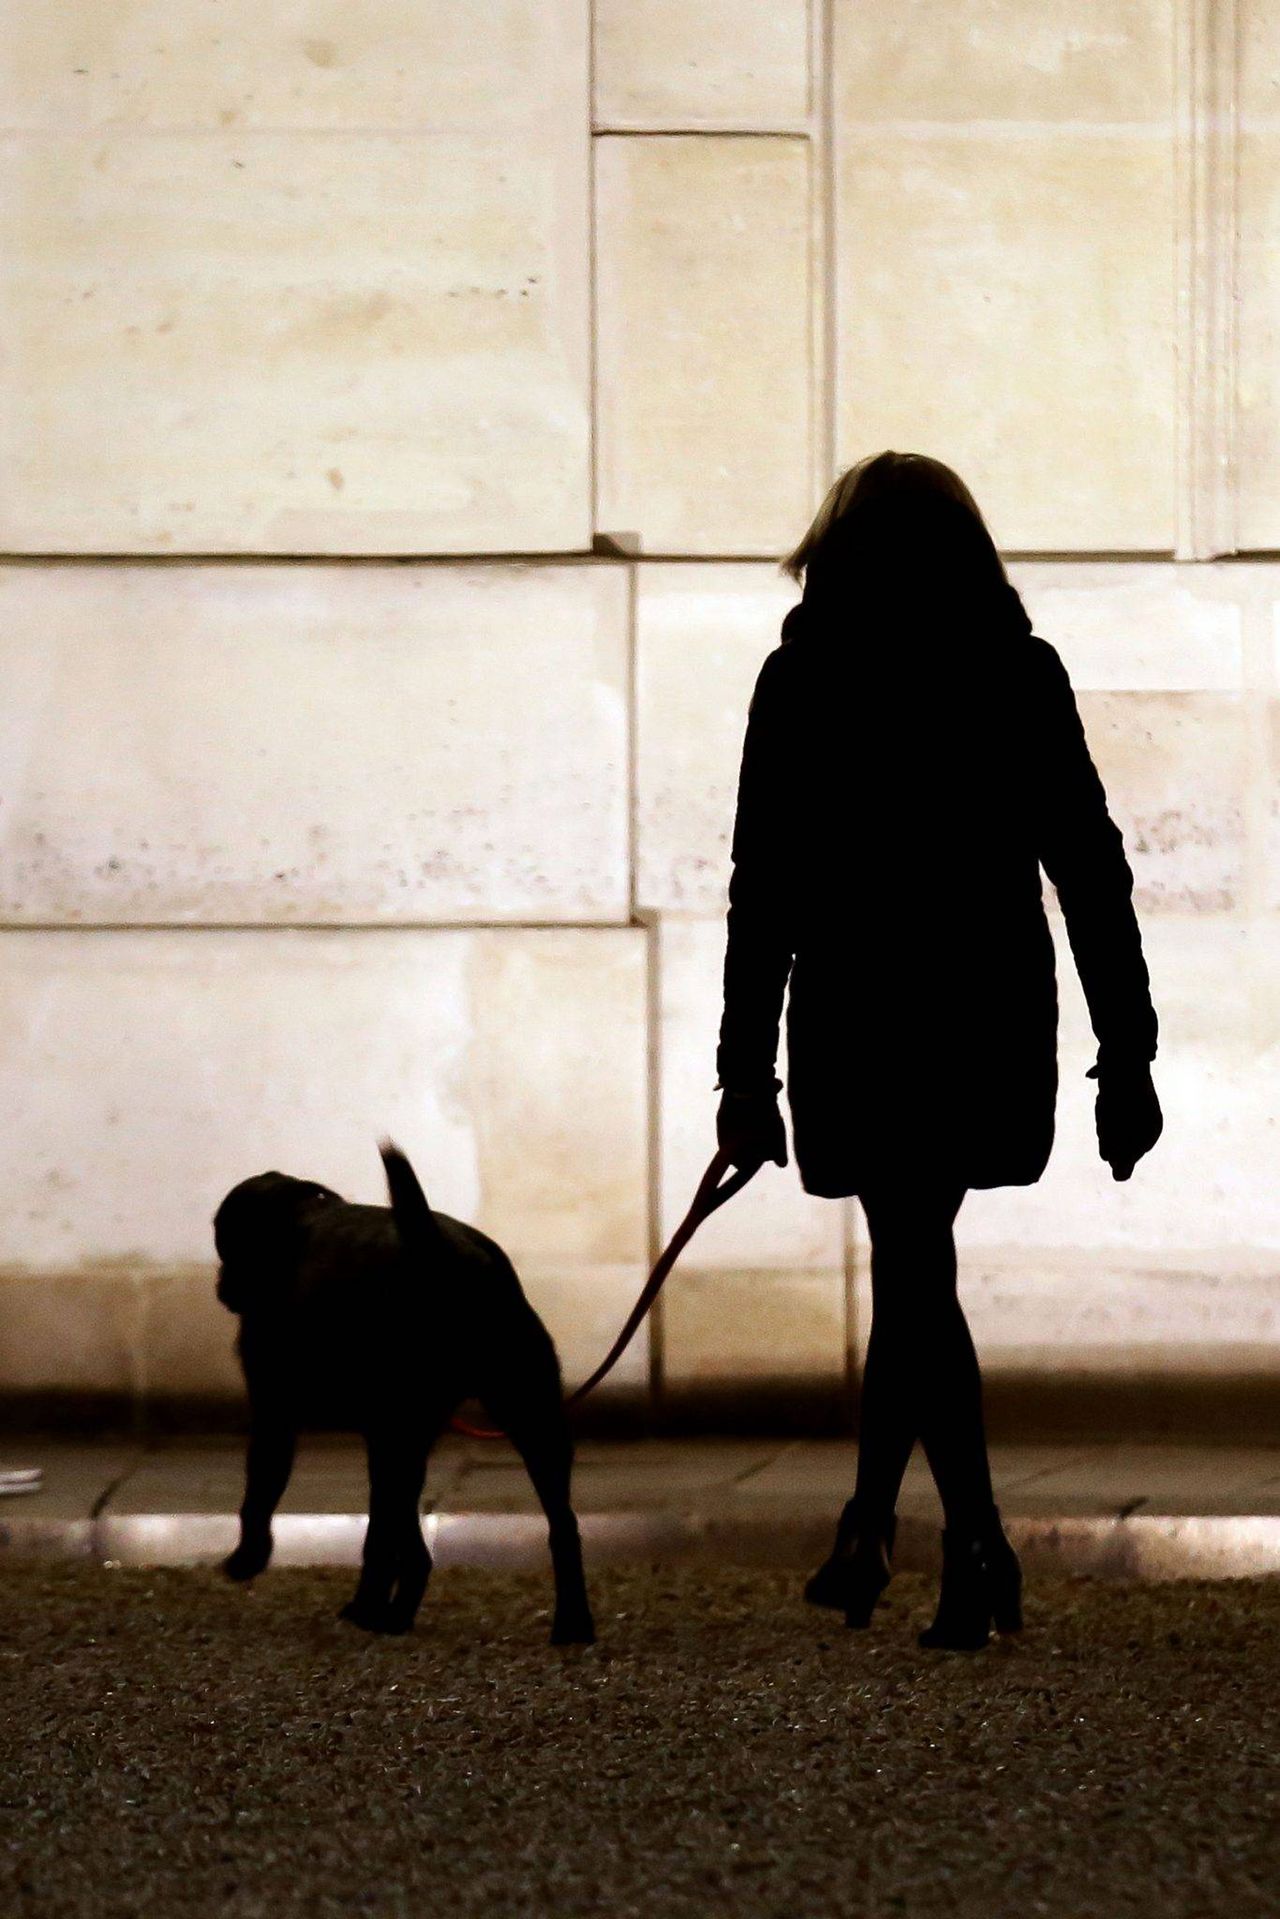 Brigitte Macron na spacerze z psem